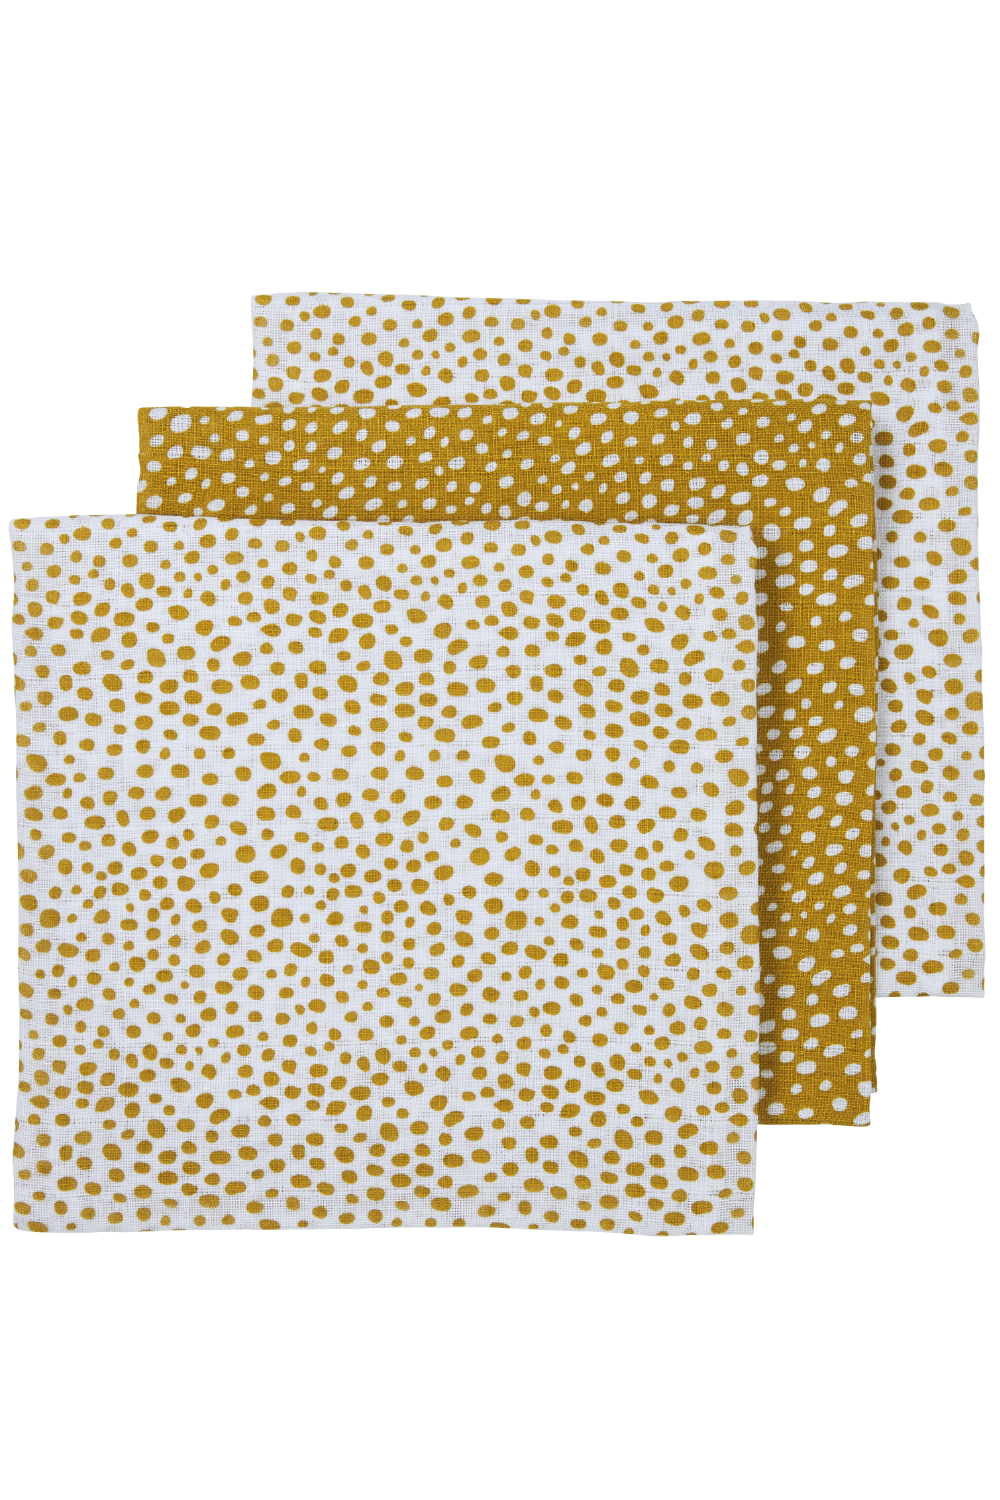 Mullwindeln 3er pack Cheetah - honey gold - 70x70cm